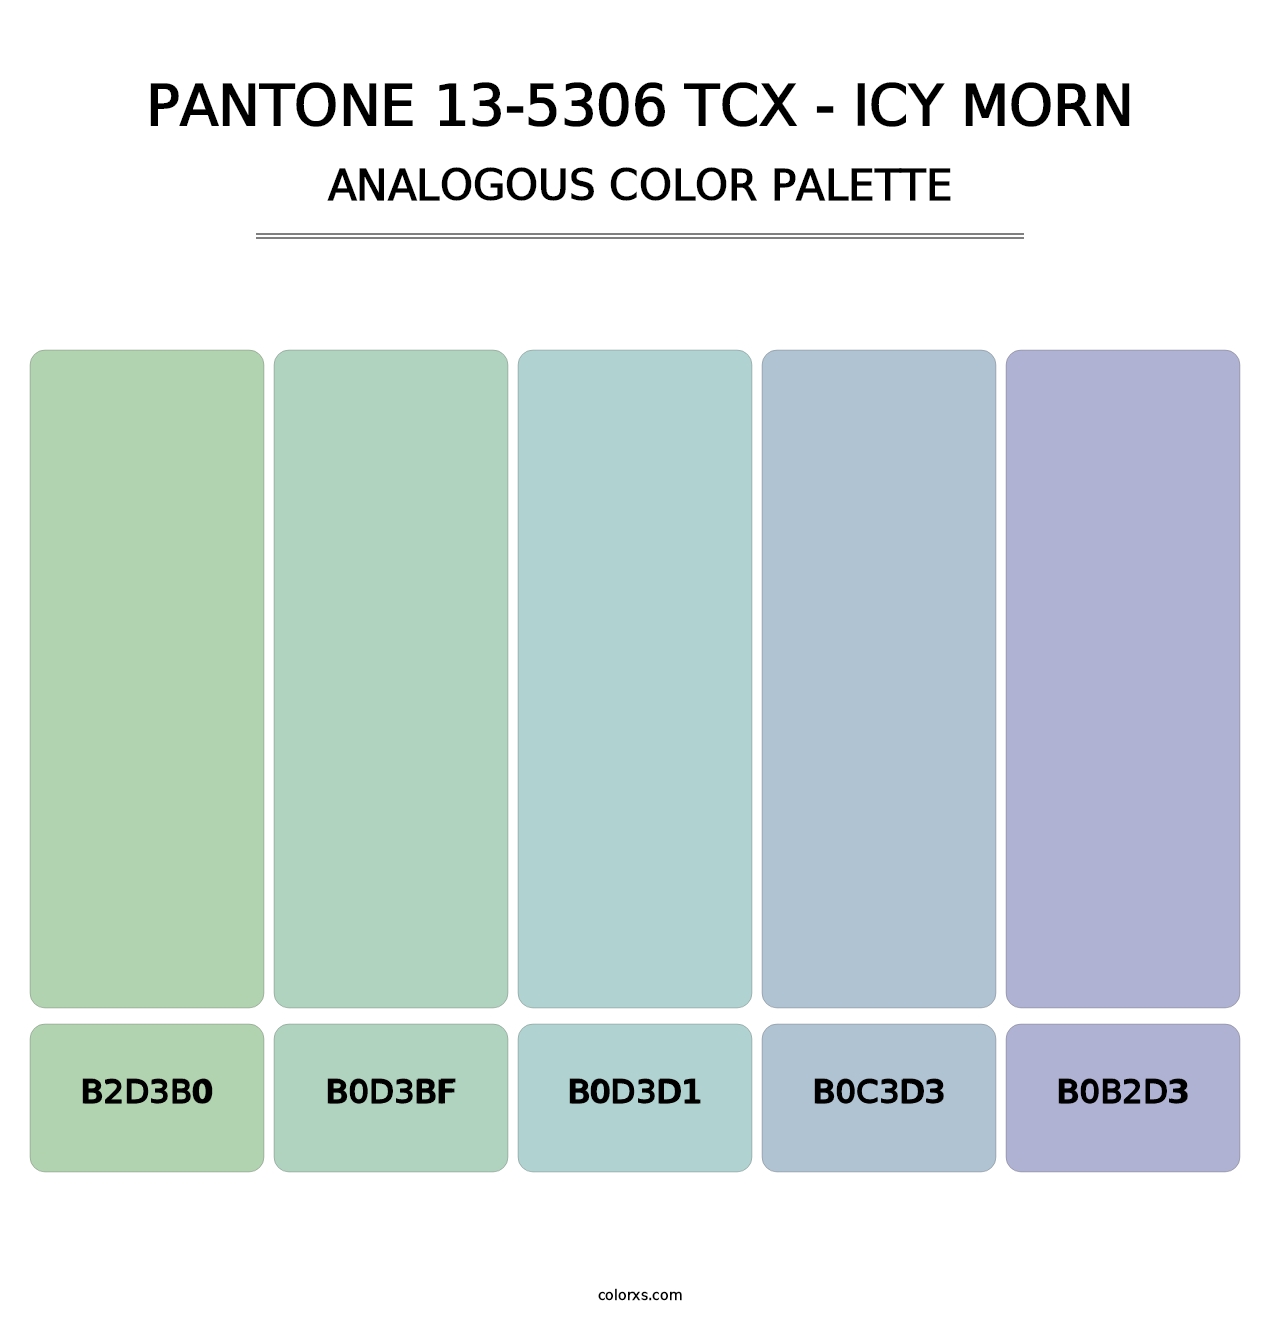 PANTONE 13-5306 TCX - Icy Morn - Analogous Color Palette